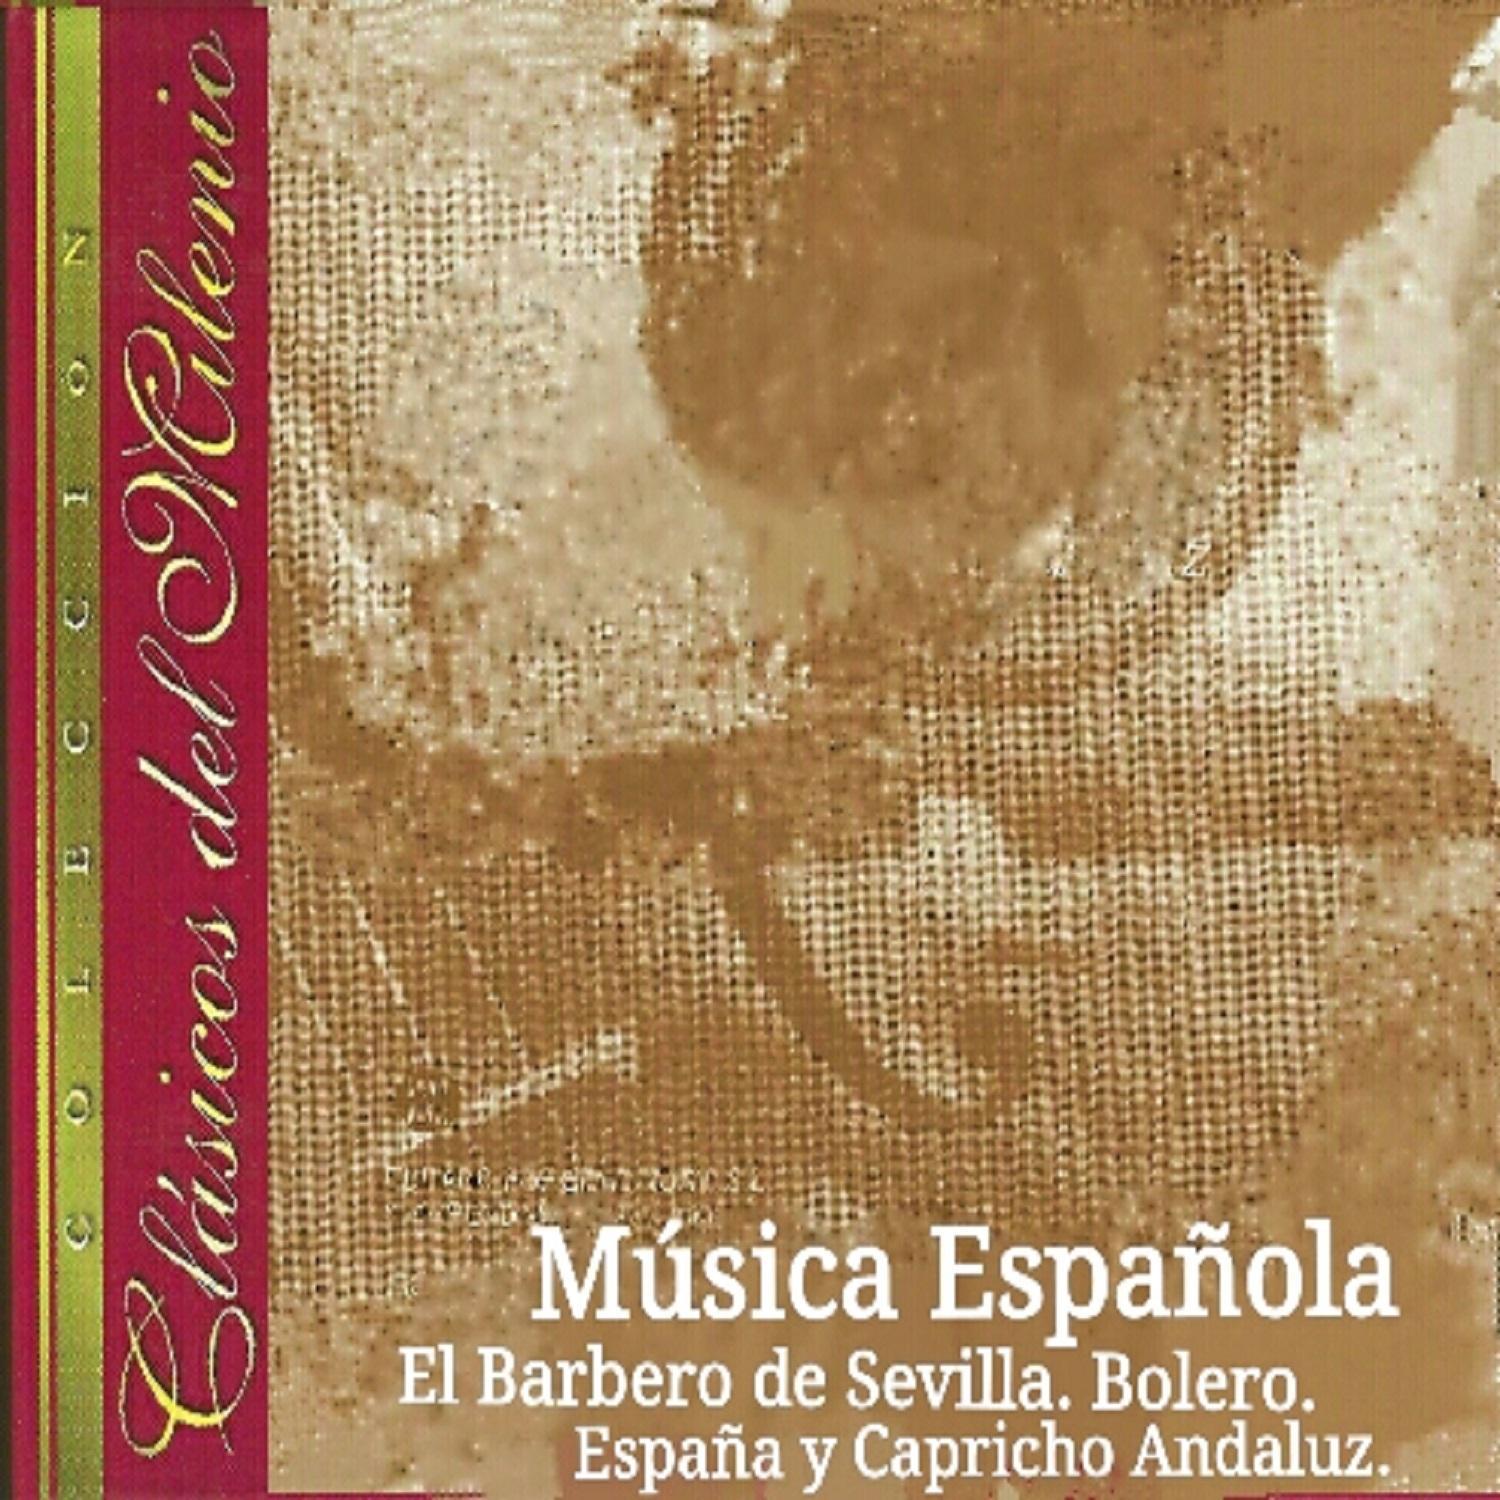 Clásicos del Milenio, Música Española专辑